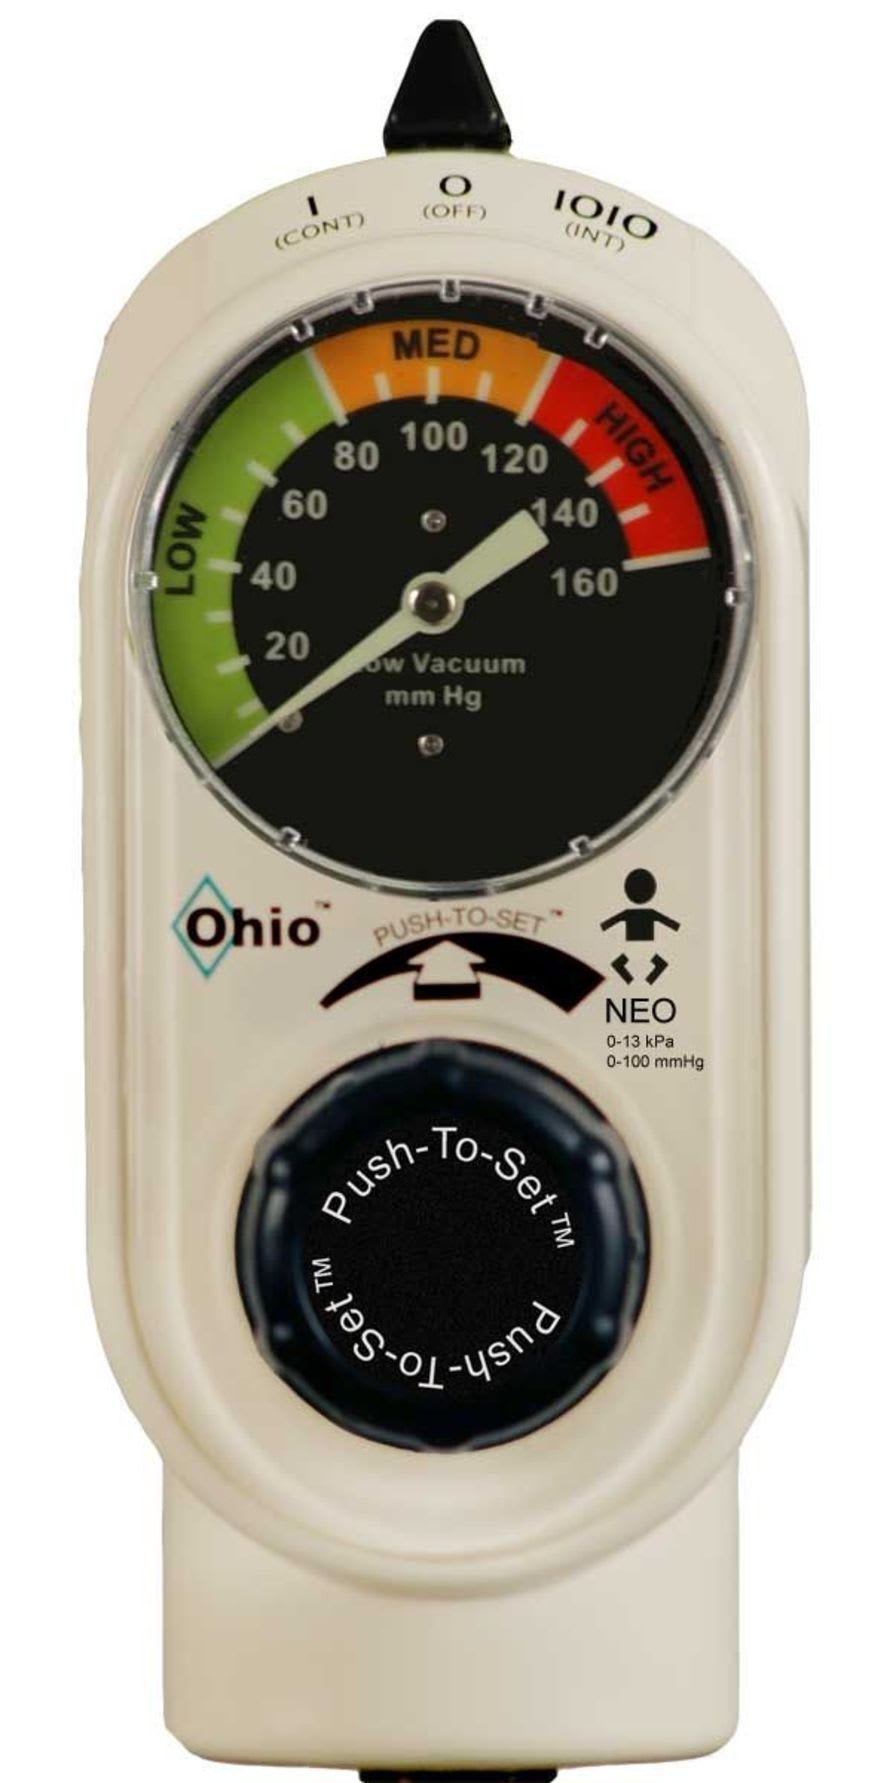 Vacuum regulator / plug-in type / pediatric PUSH-TO-SET™ NEO Ohio Medical